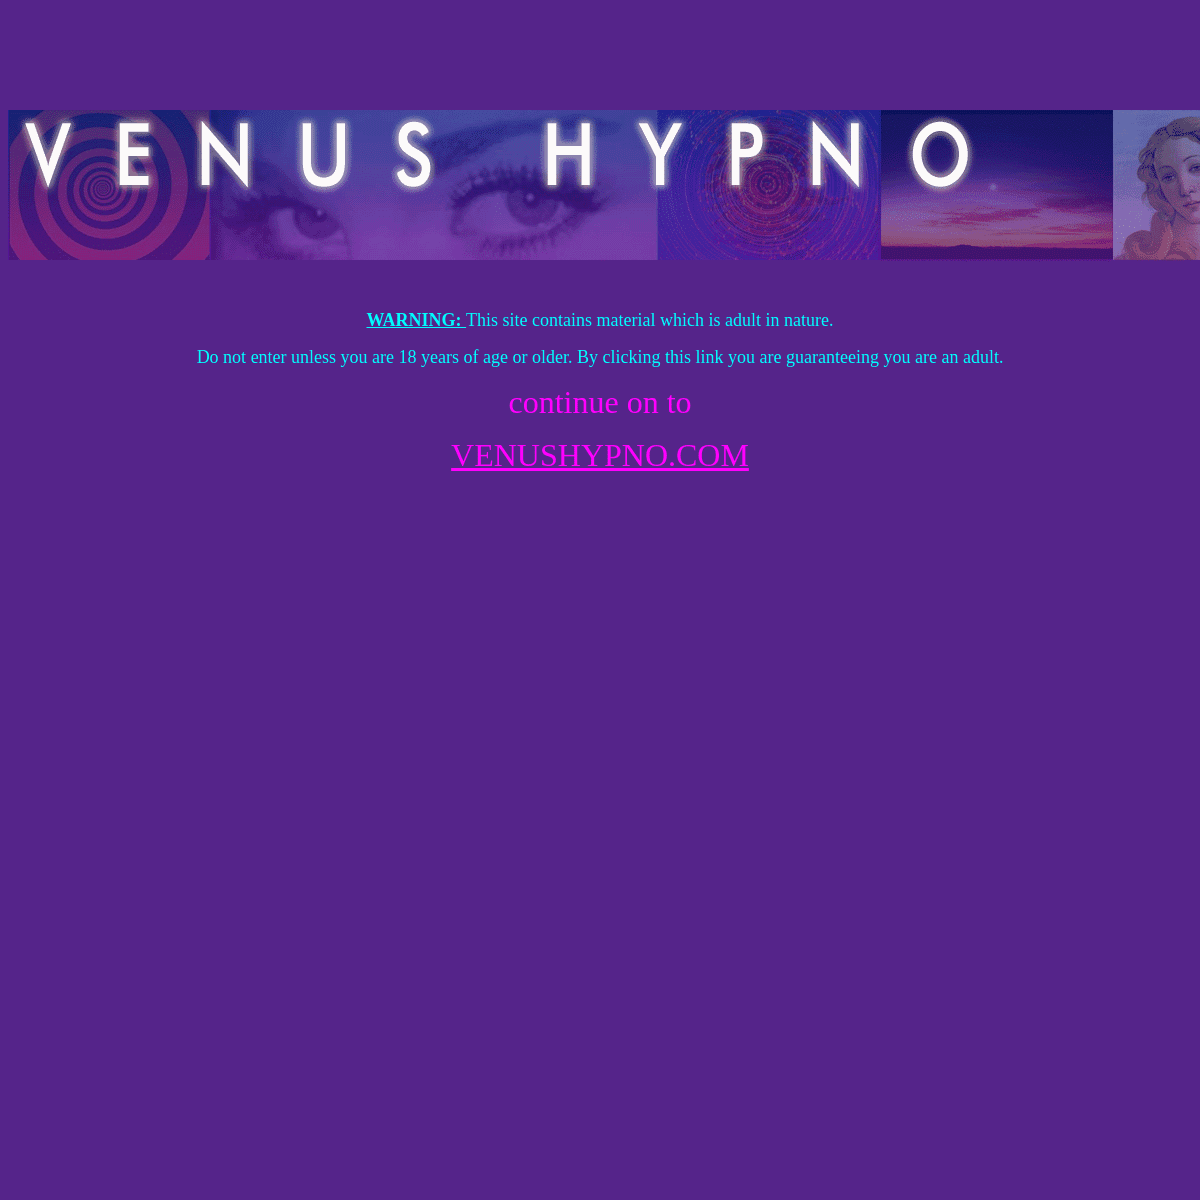 A complete backup of venushypno.com